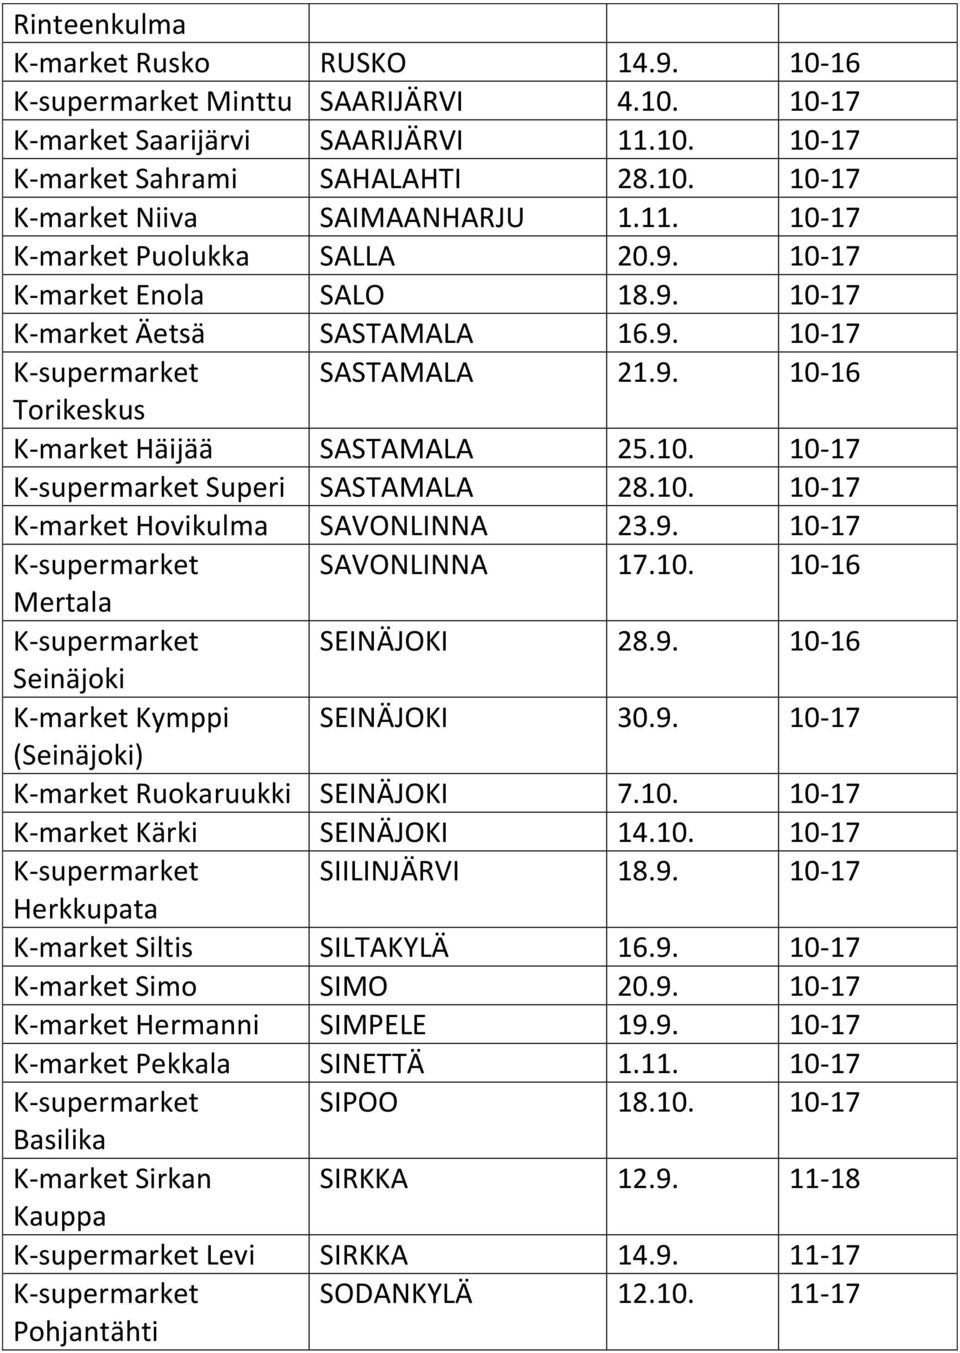 10. 10-17 K-market Hovikulma SAVONLINNA 23.9. 10-17 K-supermarket SAVONLINNA 17.10. 10-16 Mertala K-supermarket SEINÄJOKI 28.9. 10-16 Seinäjoki K-market Kymppi SEINÄJOKI 30.9. 10-17 (Seinäjoki) K-market Ruokaruukki SEINÄJOKI 7.